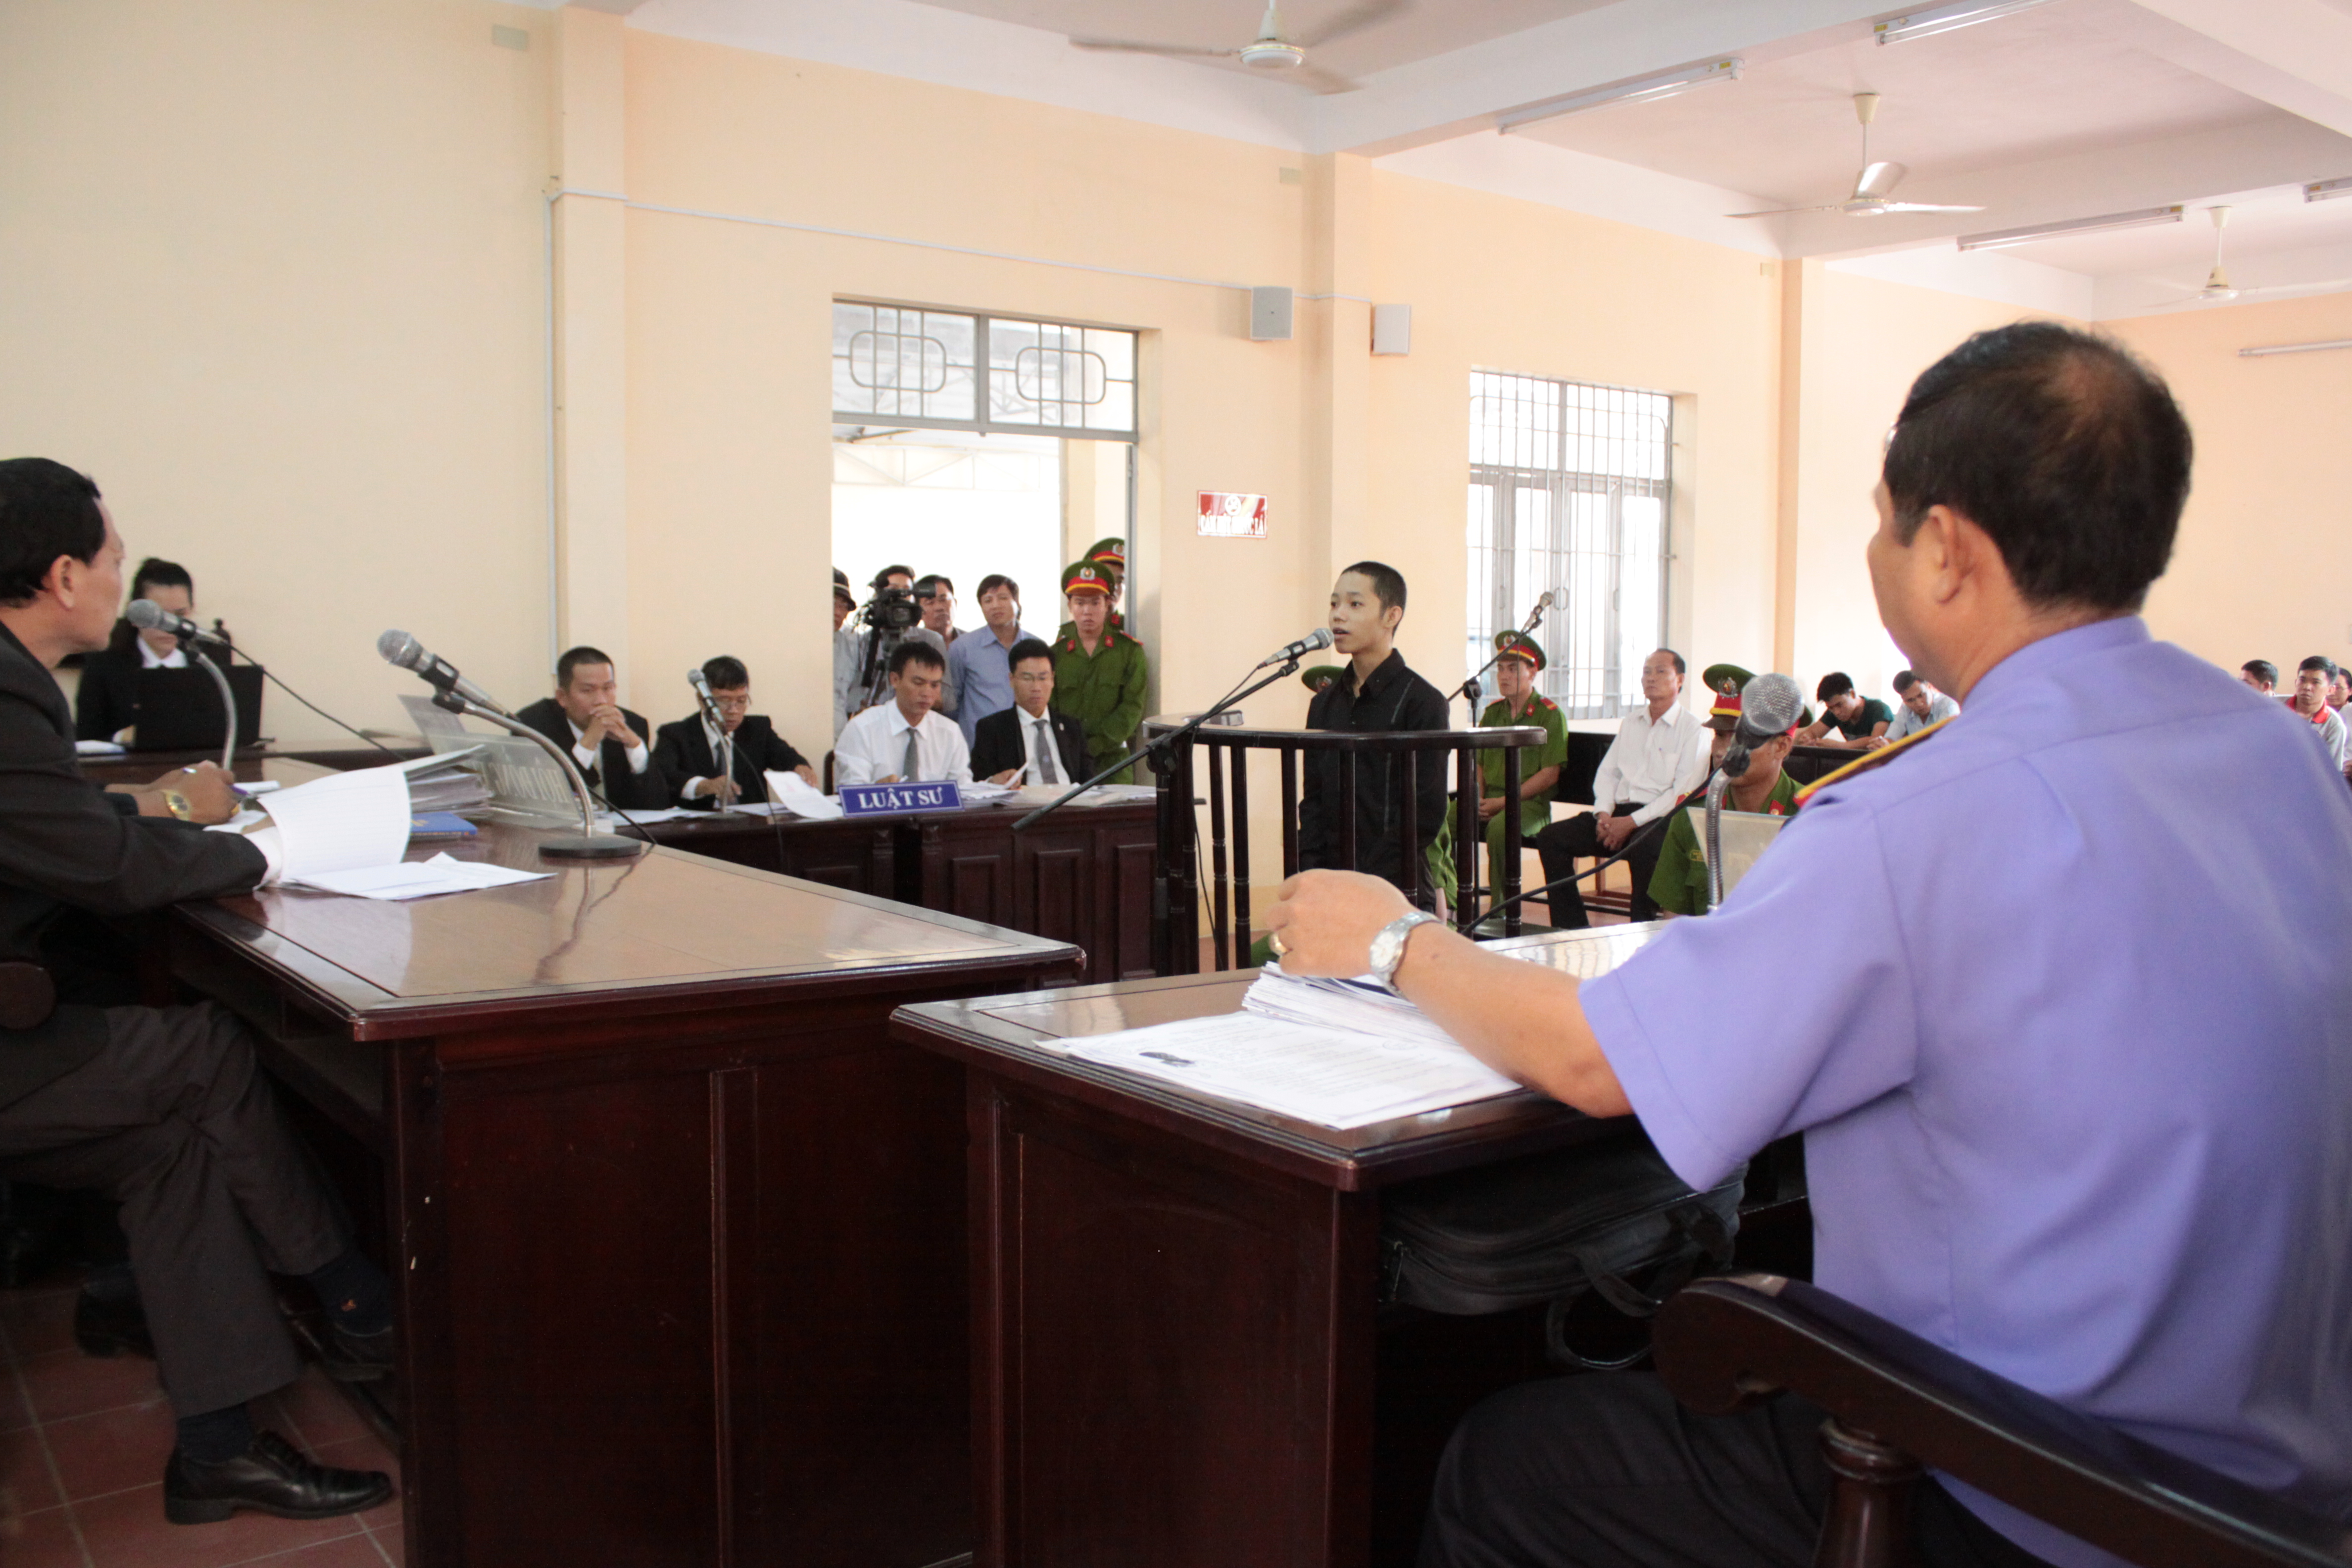 Nói lời sau cùng, Nguyễn Mai Trung Tuấn xin được đi học lại - Ảnh: An Long